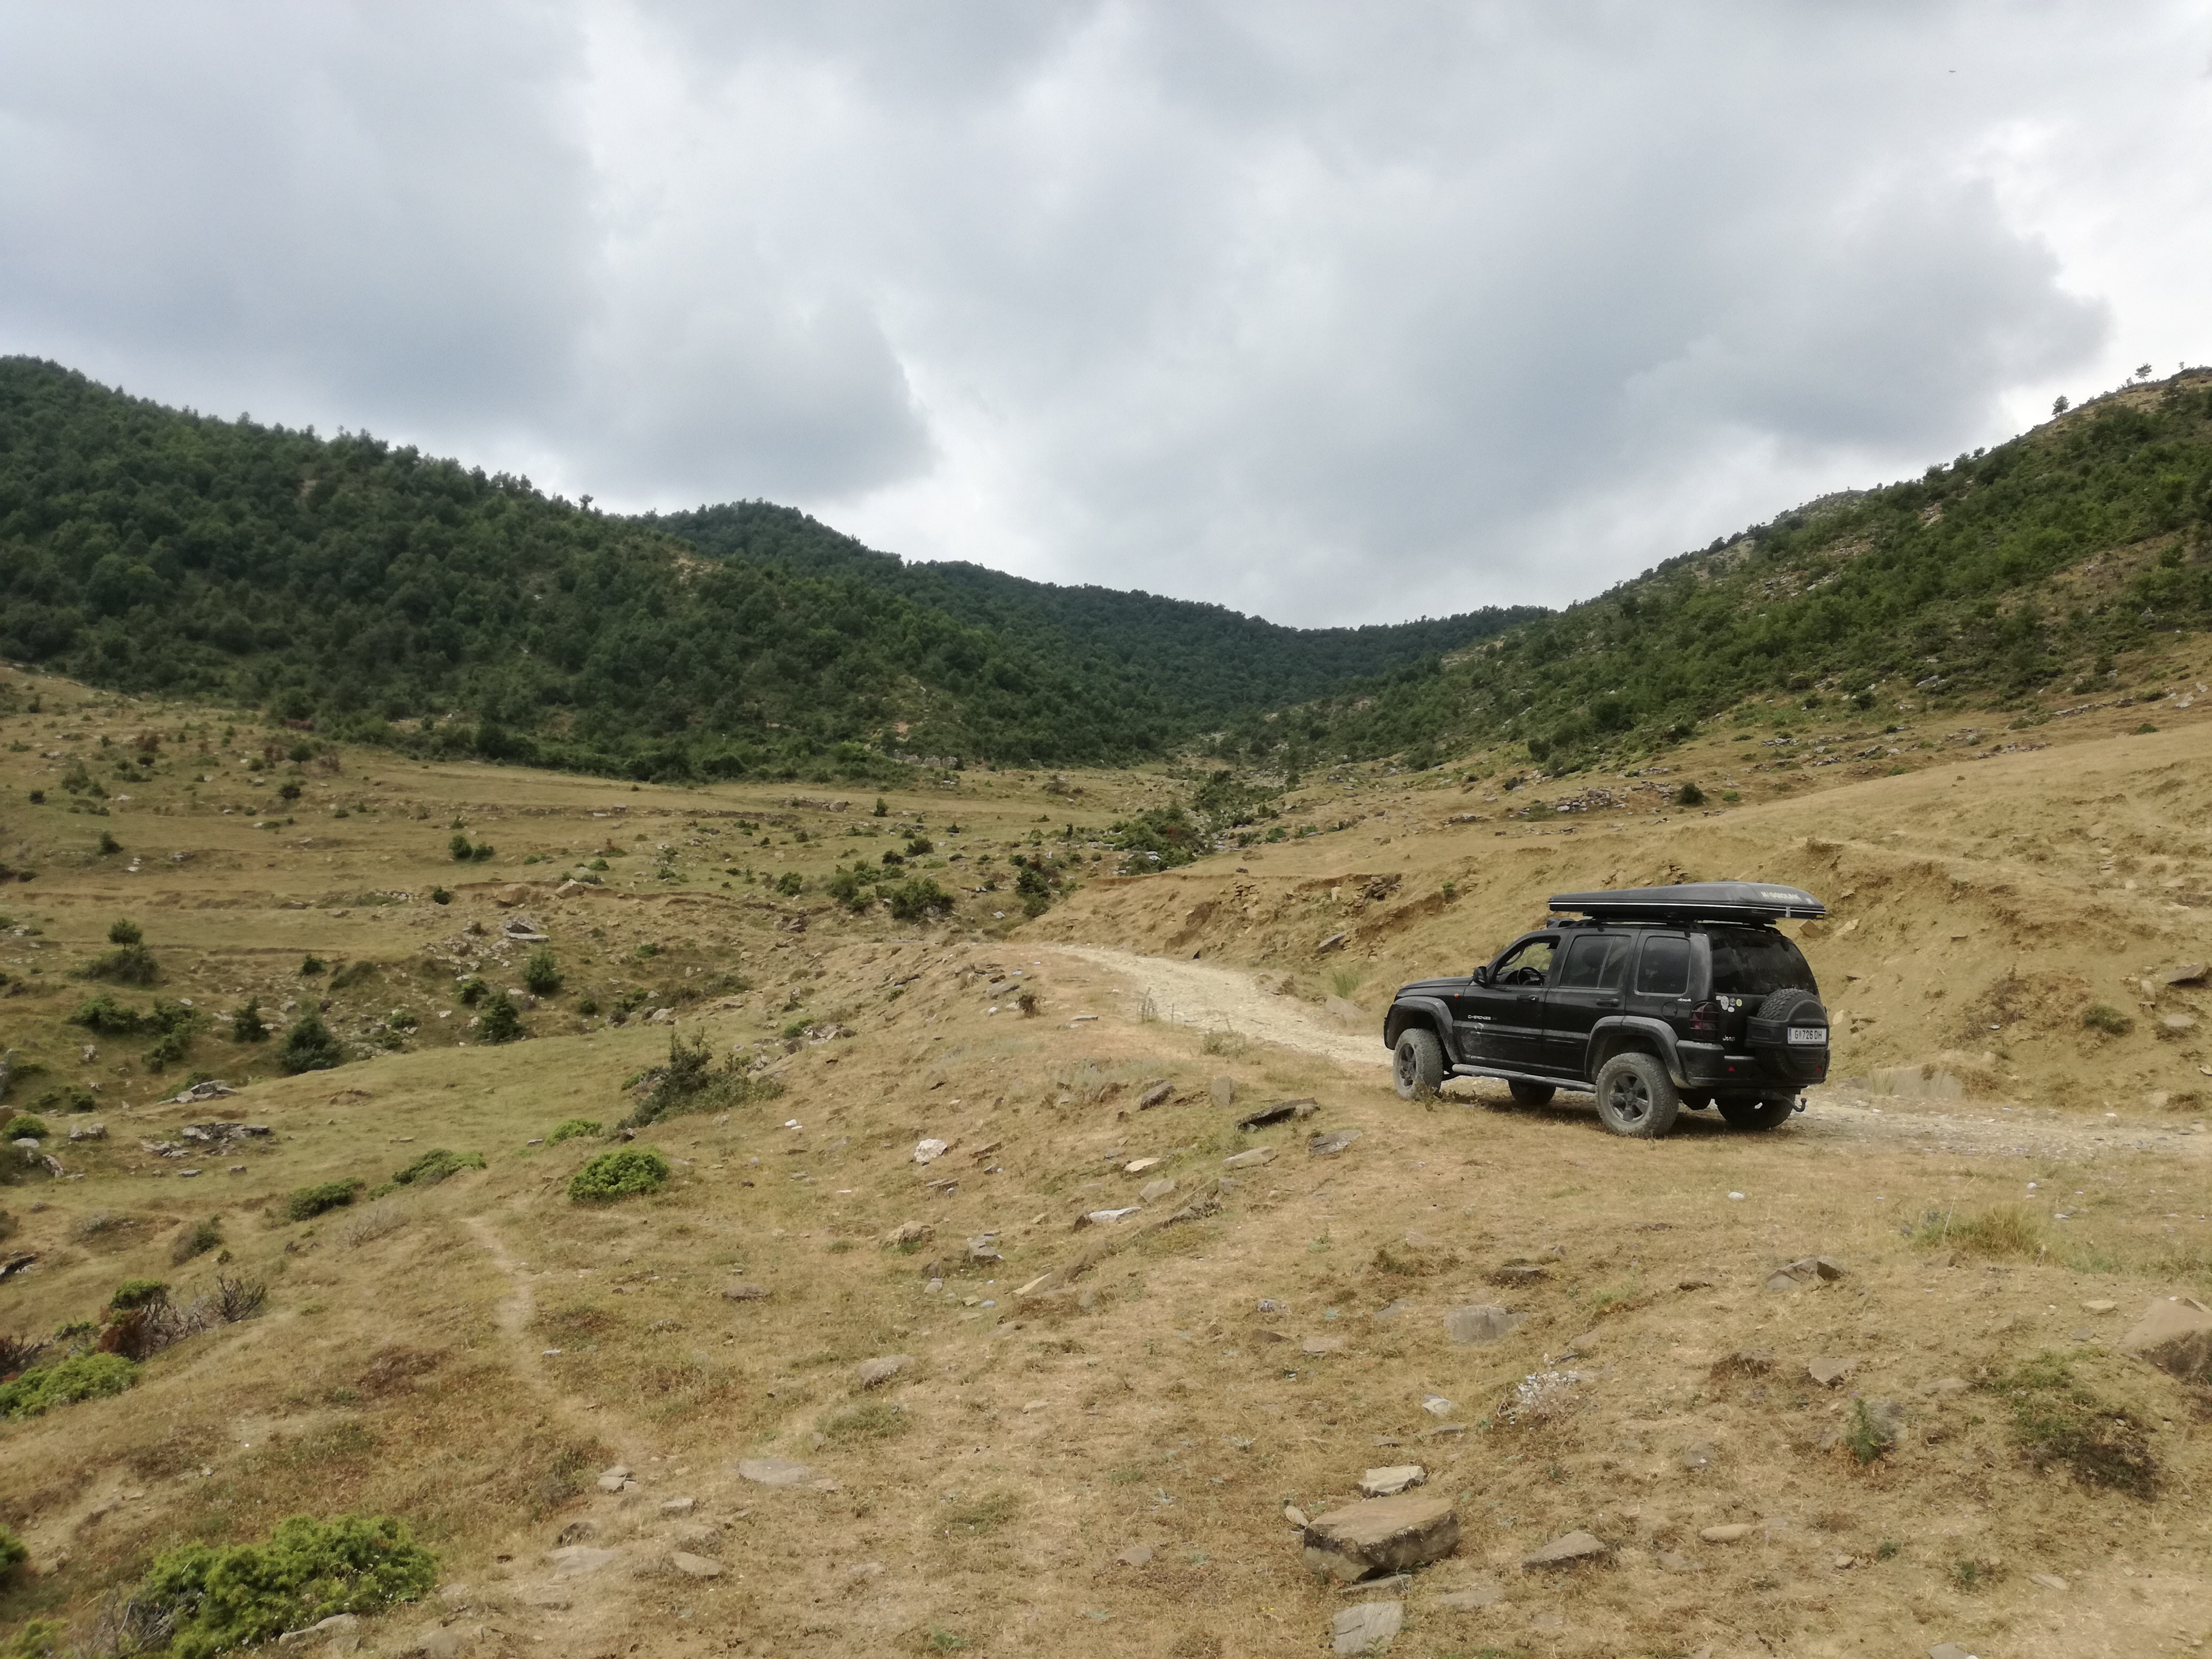 Karge Landschaft, aber großer Offroad-Fahrspaß im albanischen Hinterland